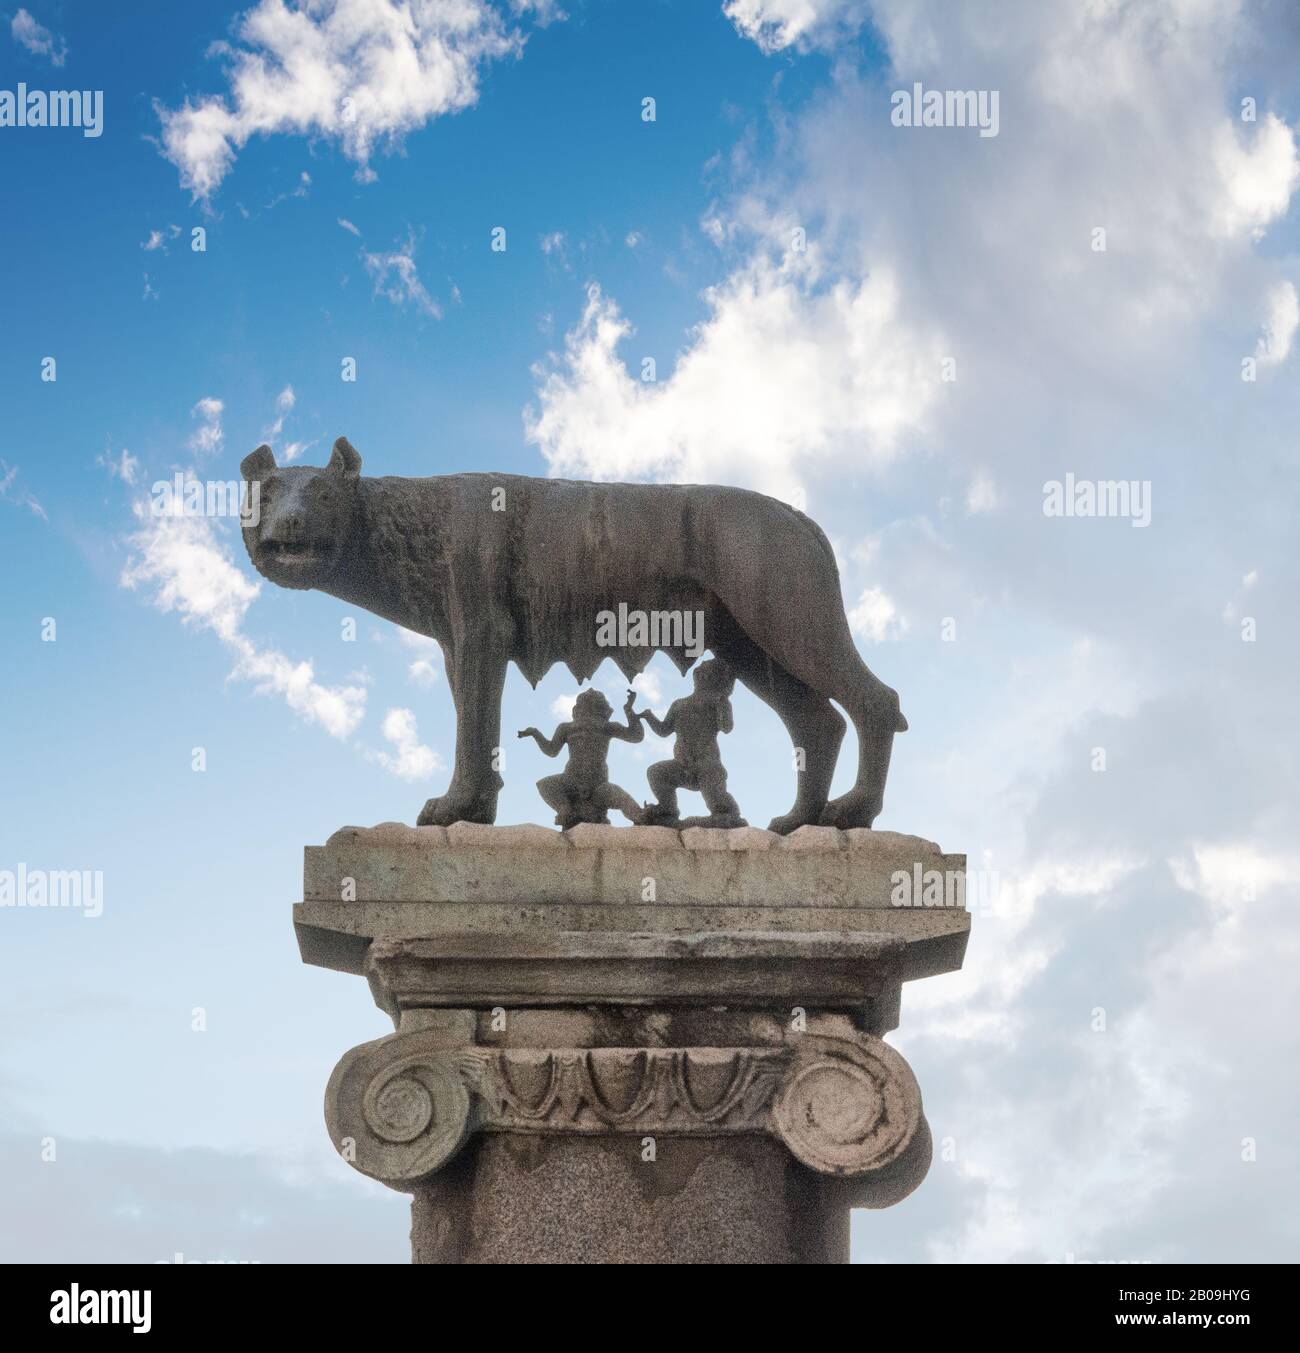 Roma, Italia - 03 ottobre 2018: Silhouette del leggendario lupo-she che ha nutrito Romulus e Rem Foto Stock